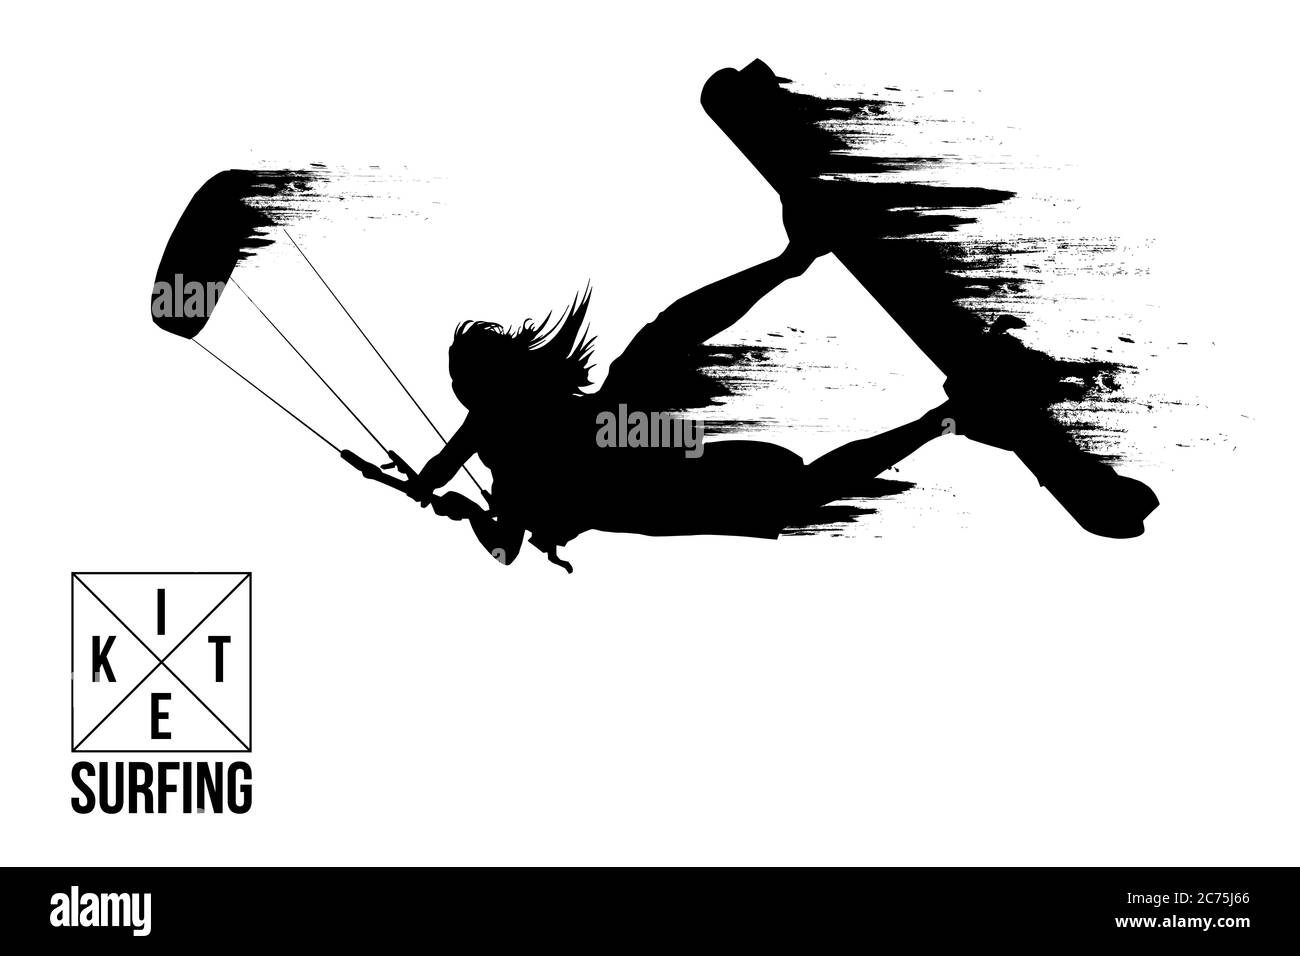 Kitesurf et kiteboarding. Silhouette d'un kitesurfer. Une femme en saut fait un tour. La concurrence aérienne. Illustration vectorielle. Merci de votre attention Illustration de Vecteur